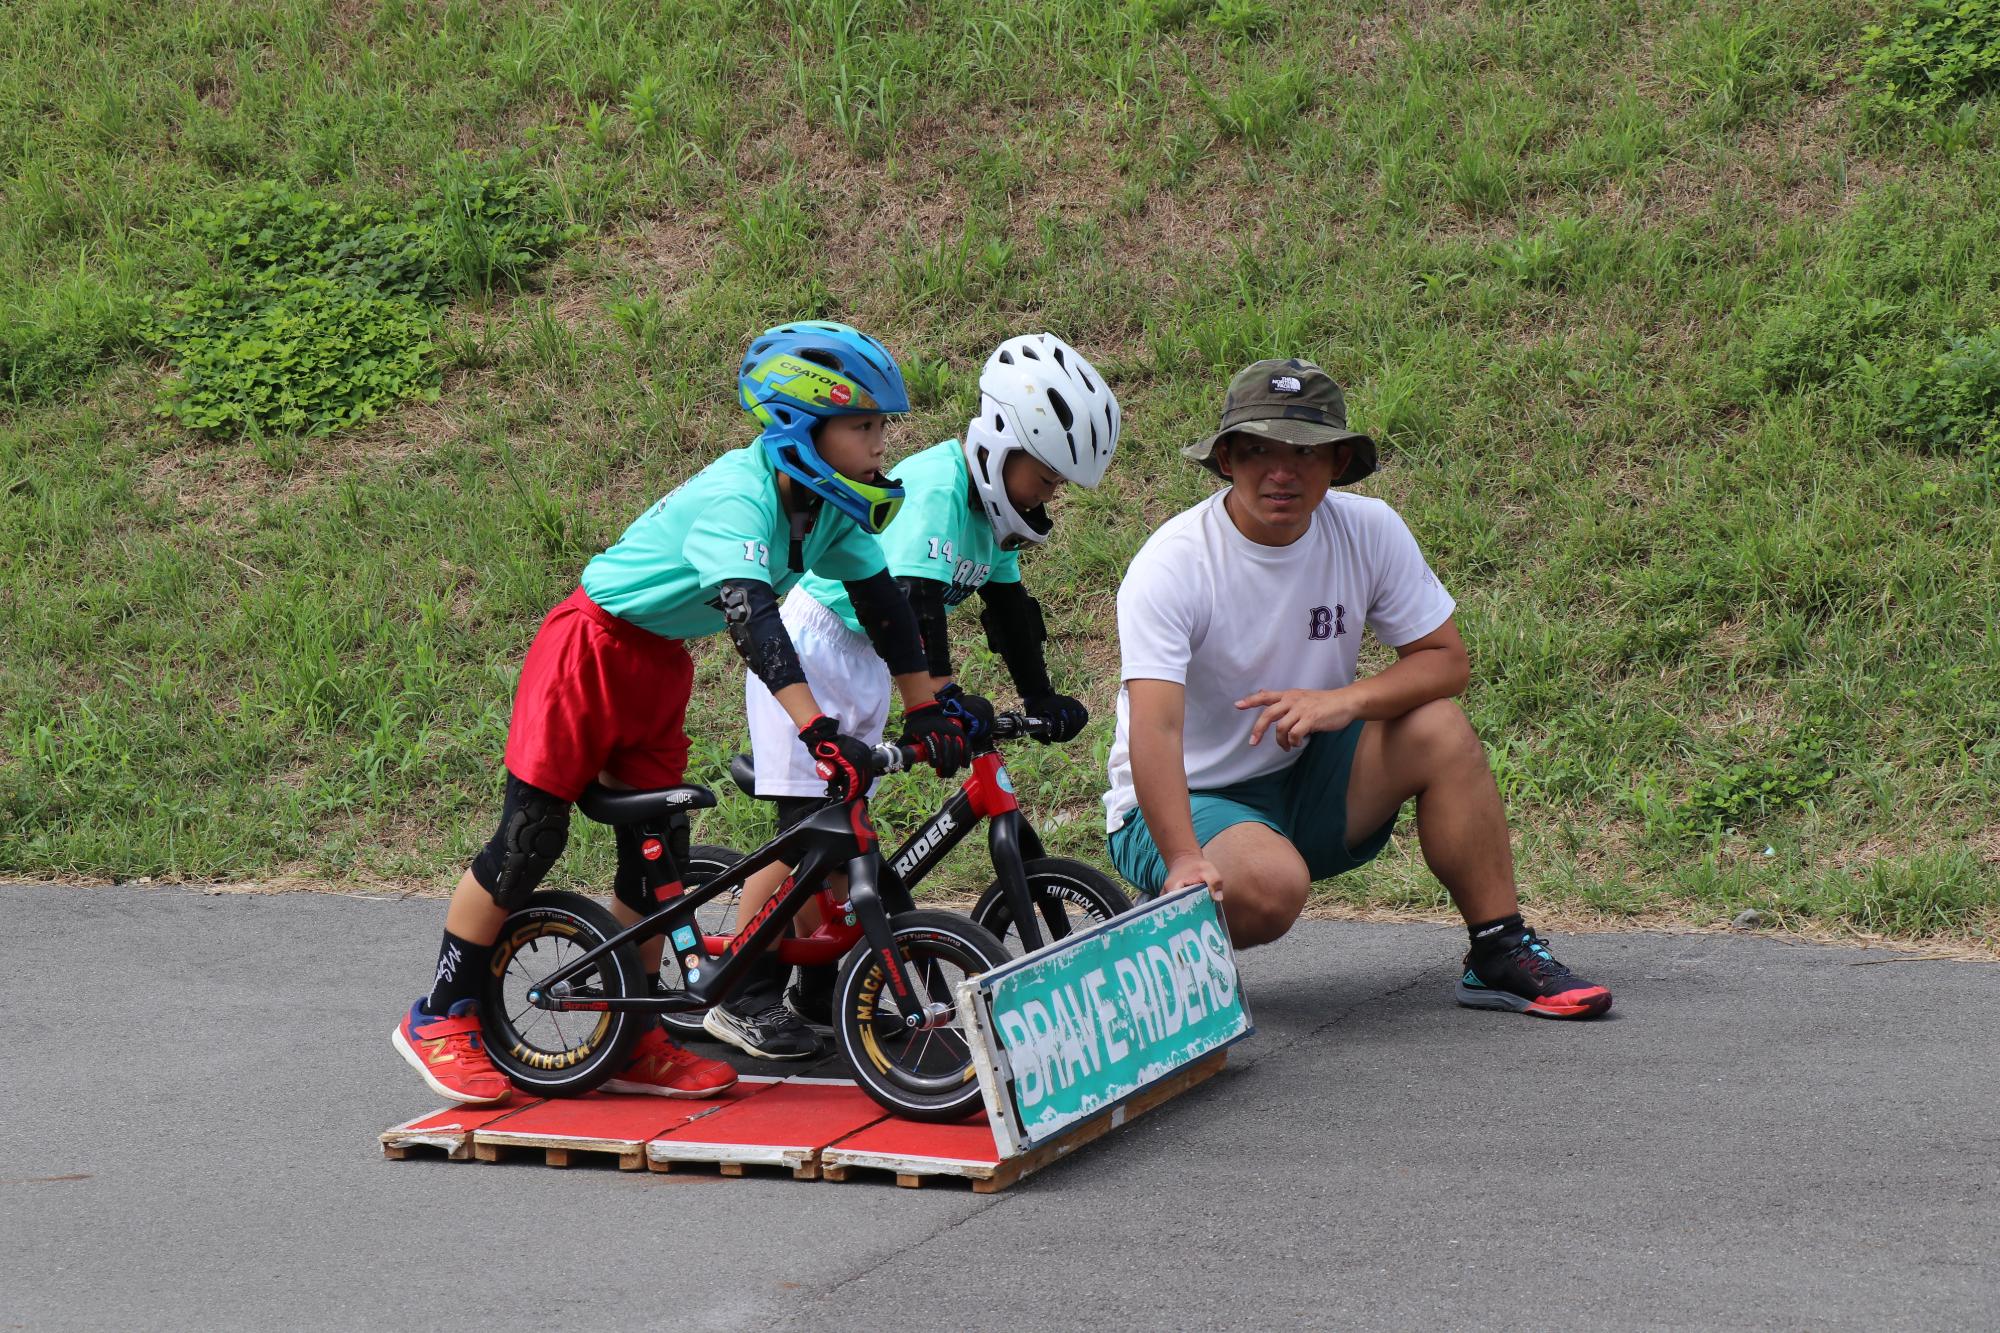 植田さんと弟の瑛士さんがランバイクに乗り、並んでスタートラインに立っている写真